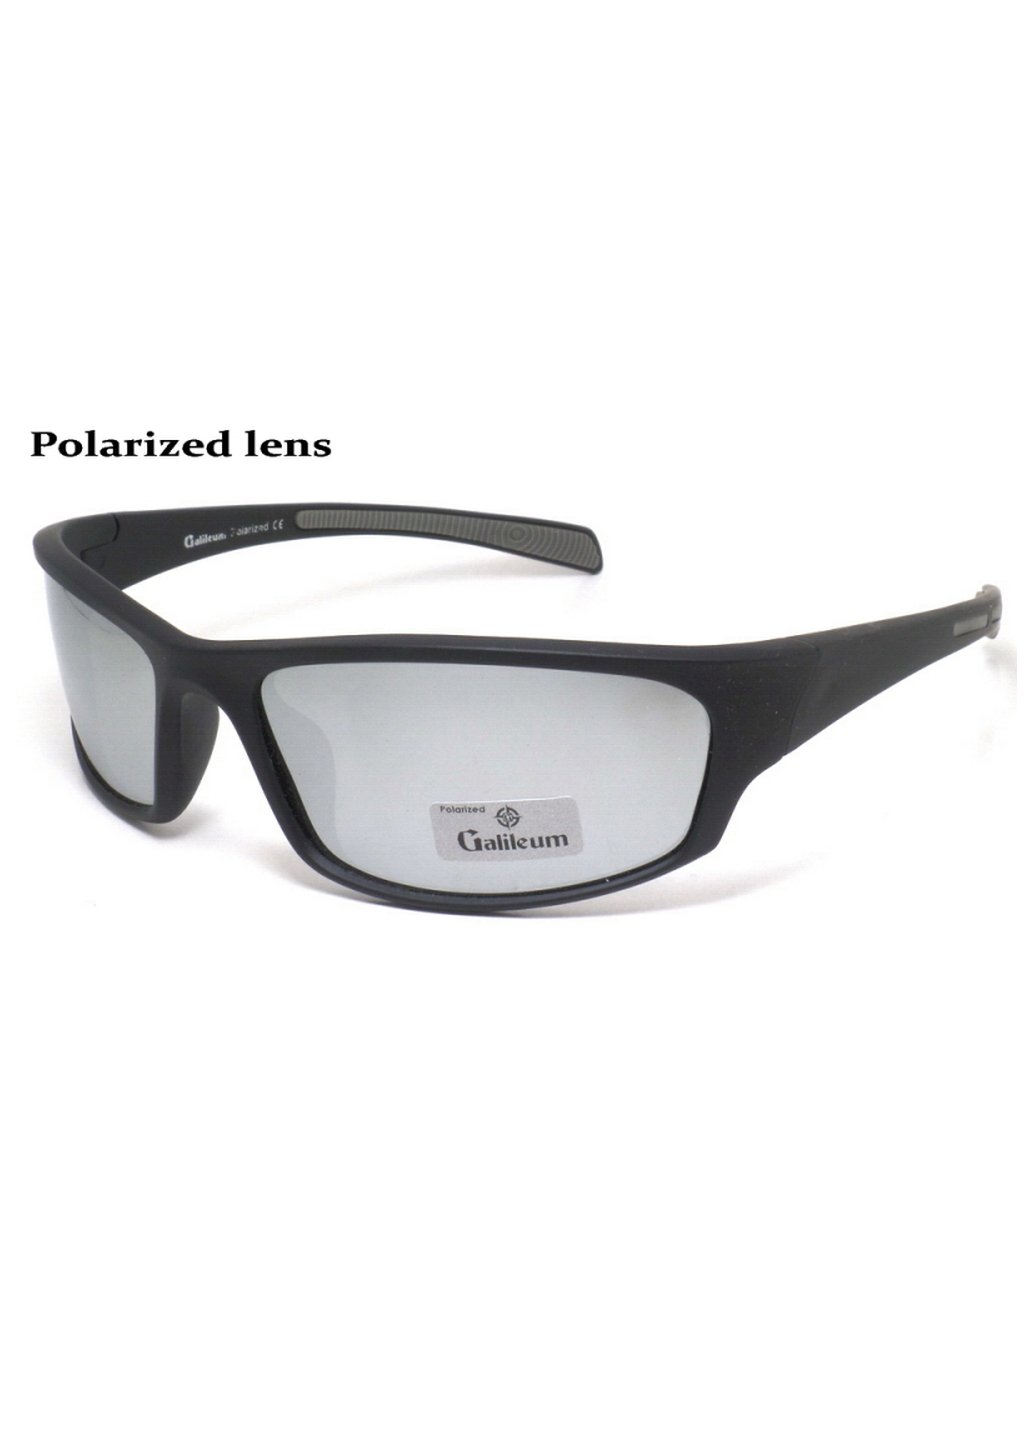 Купить Спортивные очки с поляризацией Galileum 125014 в интернет-магазине